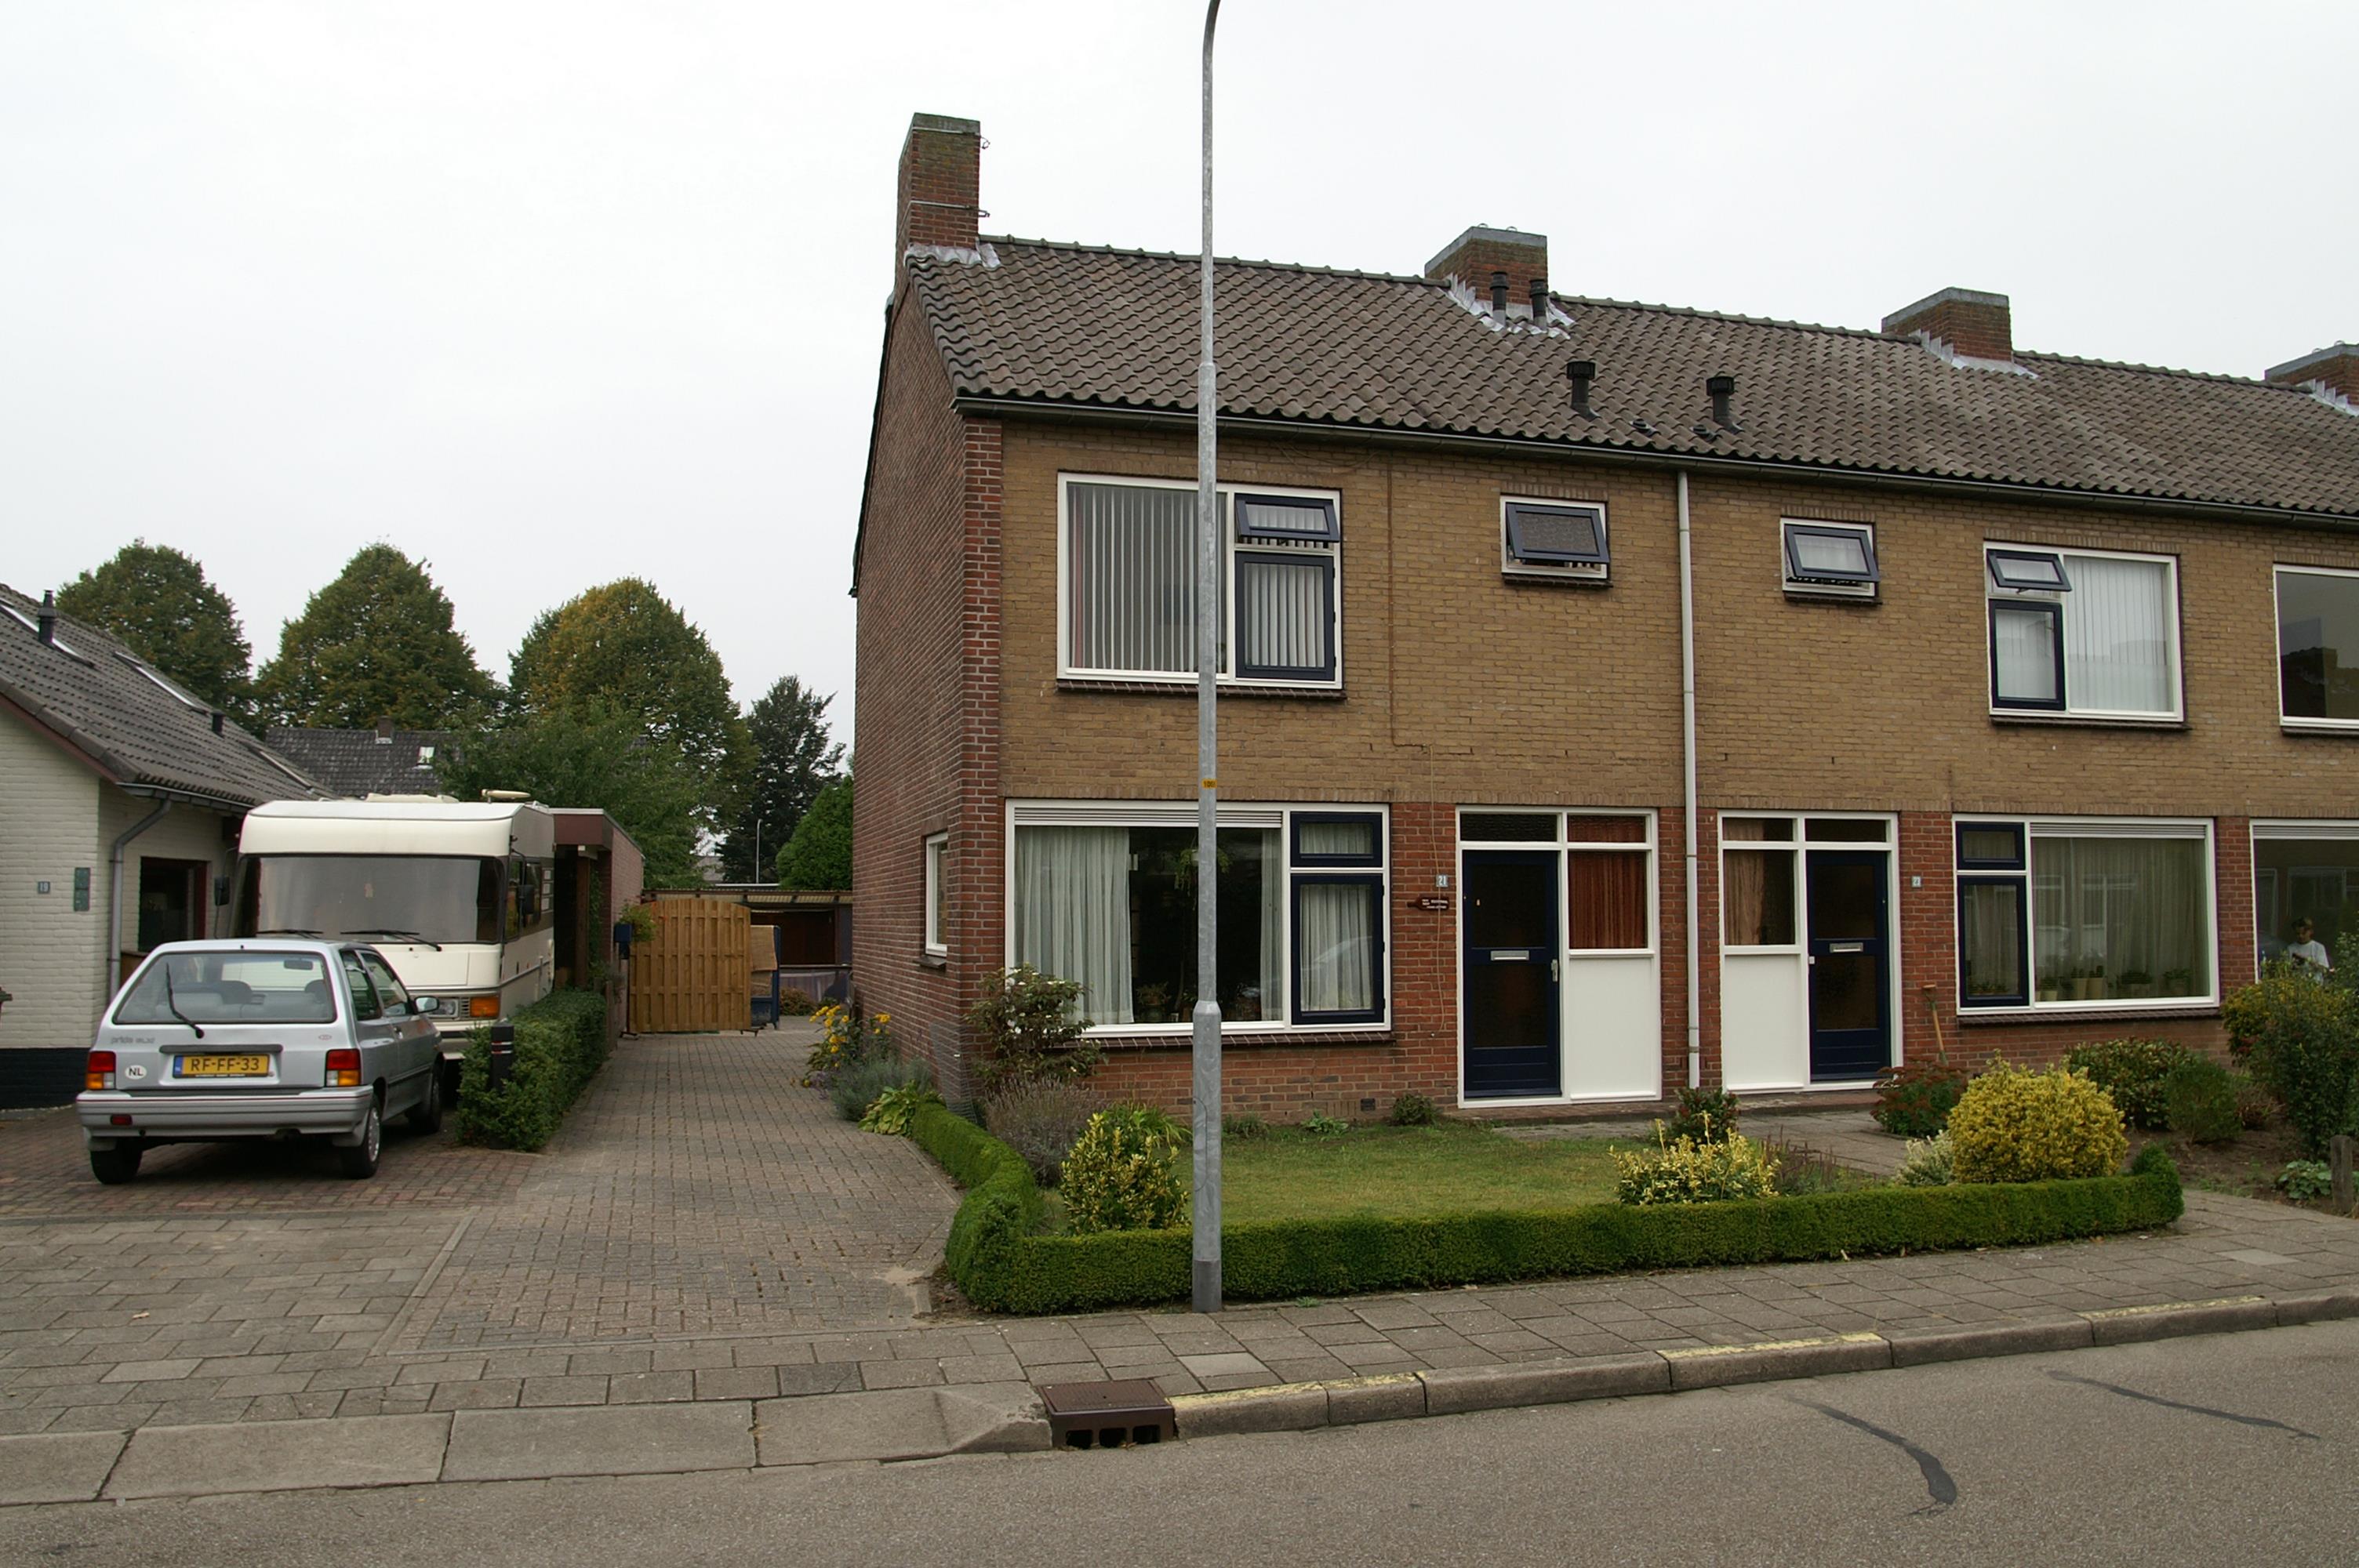 Rozenstraat 21, 6901 HS Zevenaar, Nederland